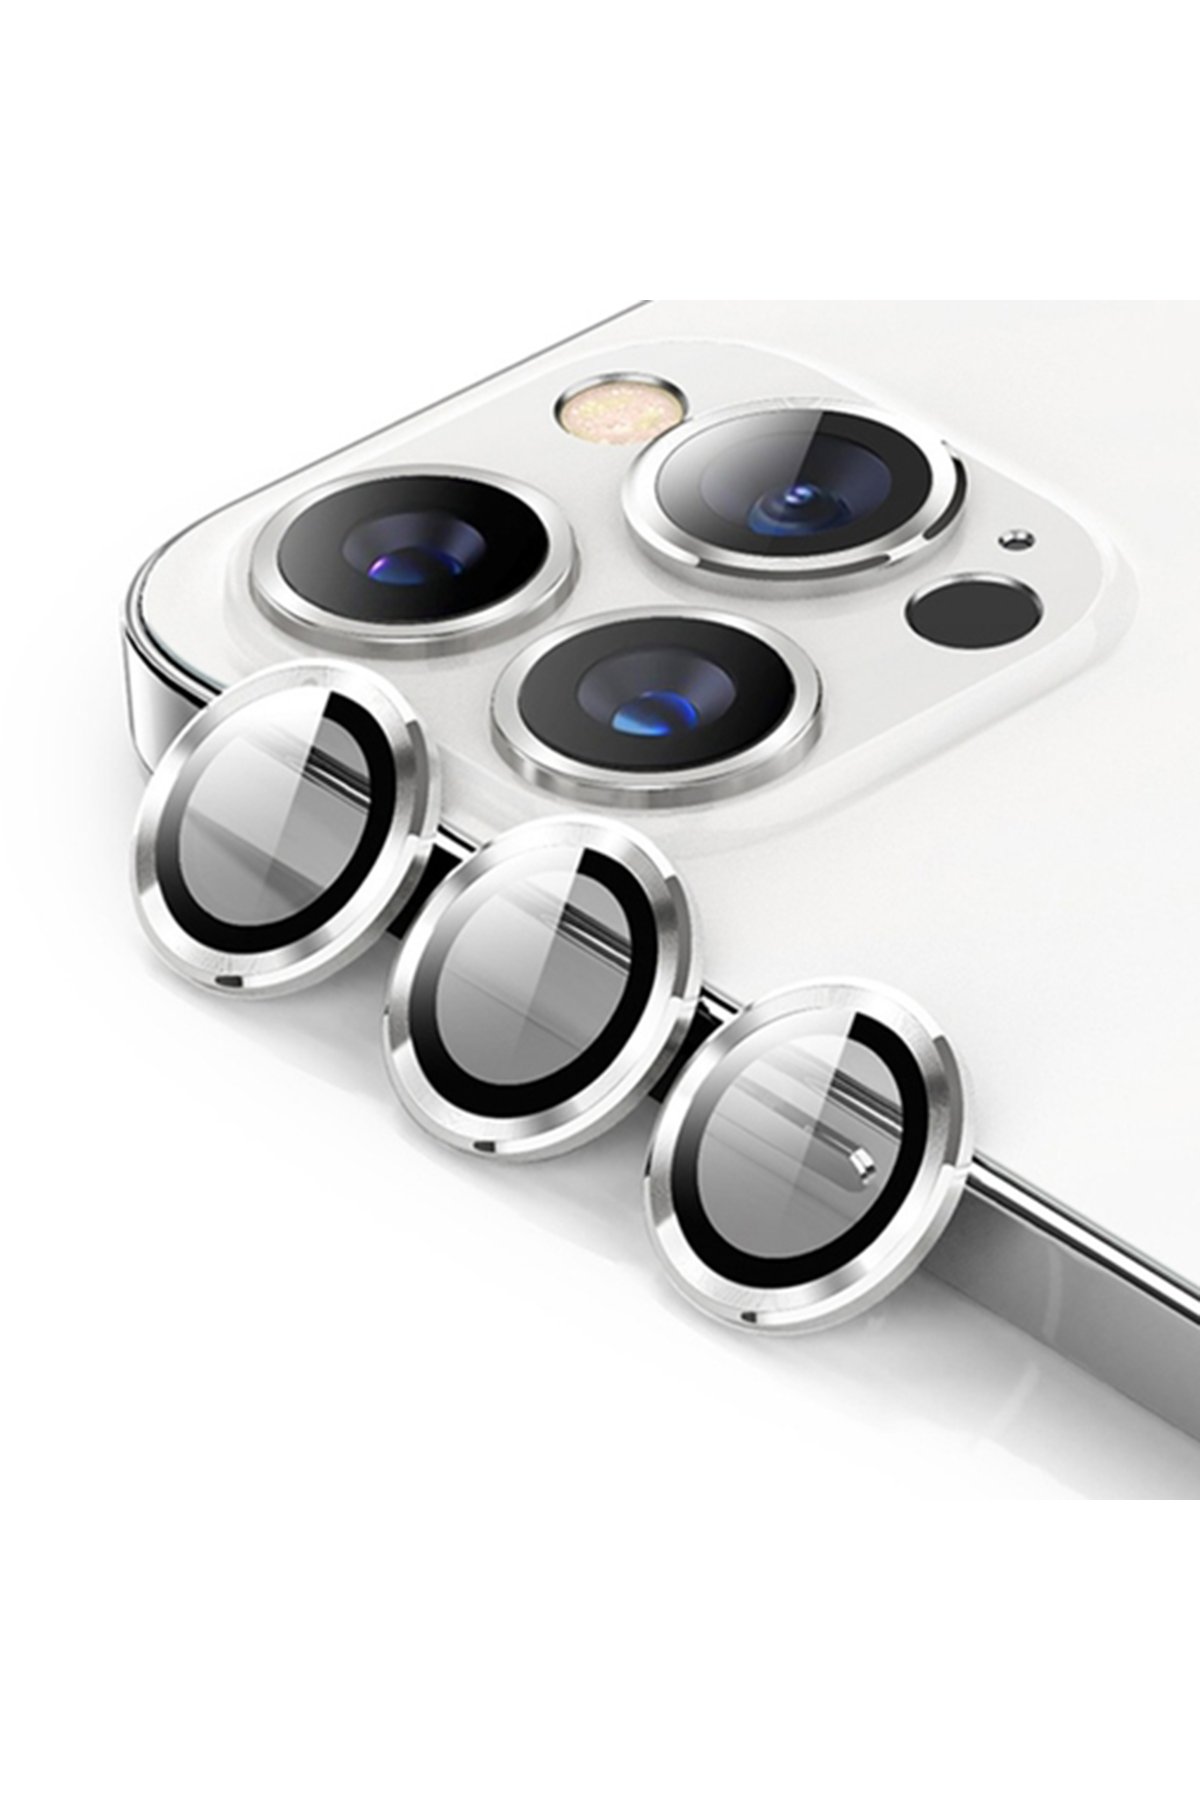 Newface iPhone 15 Pro Kılıf Montreal Silikon Kapak - Kırmızı